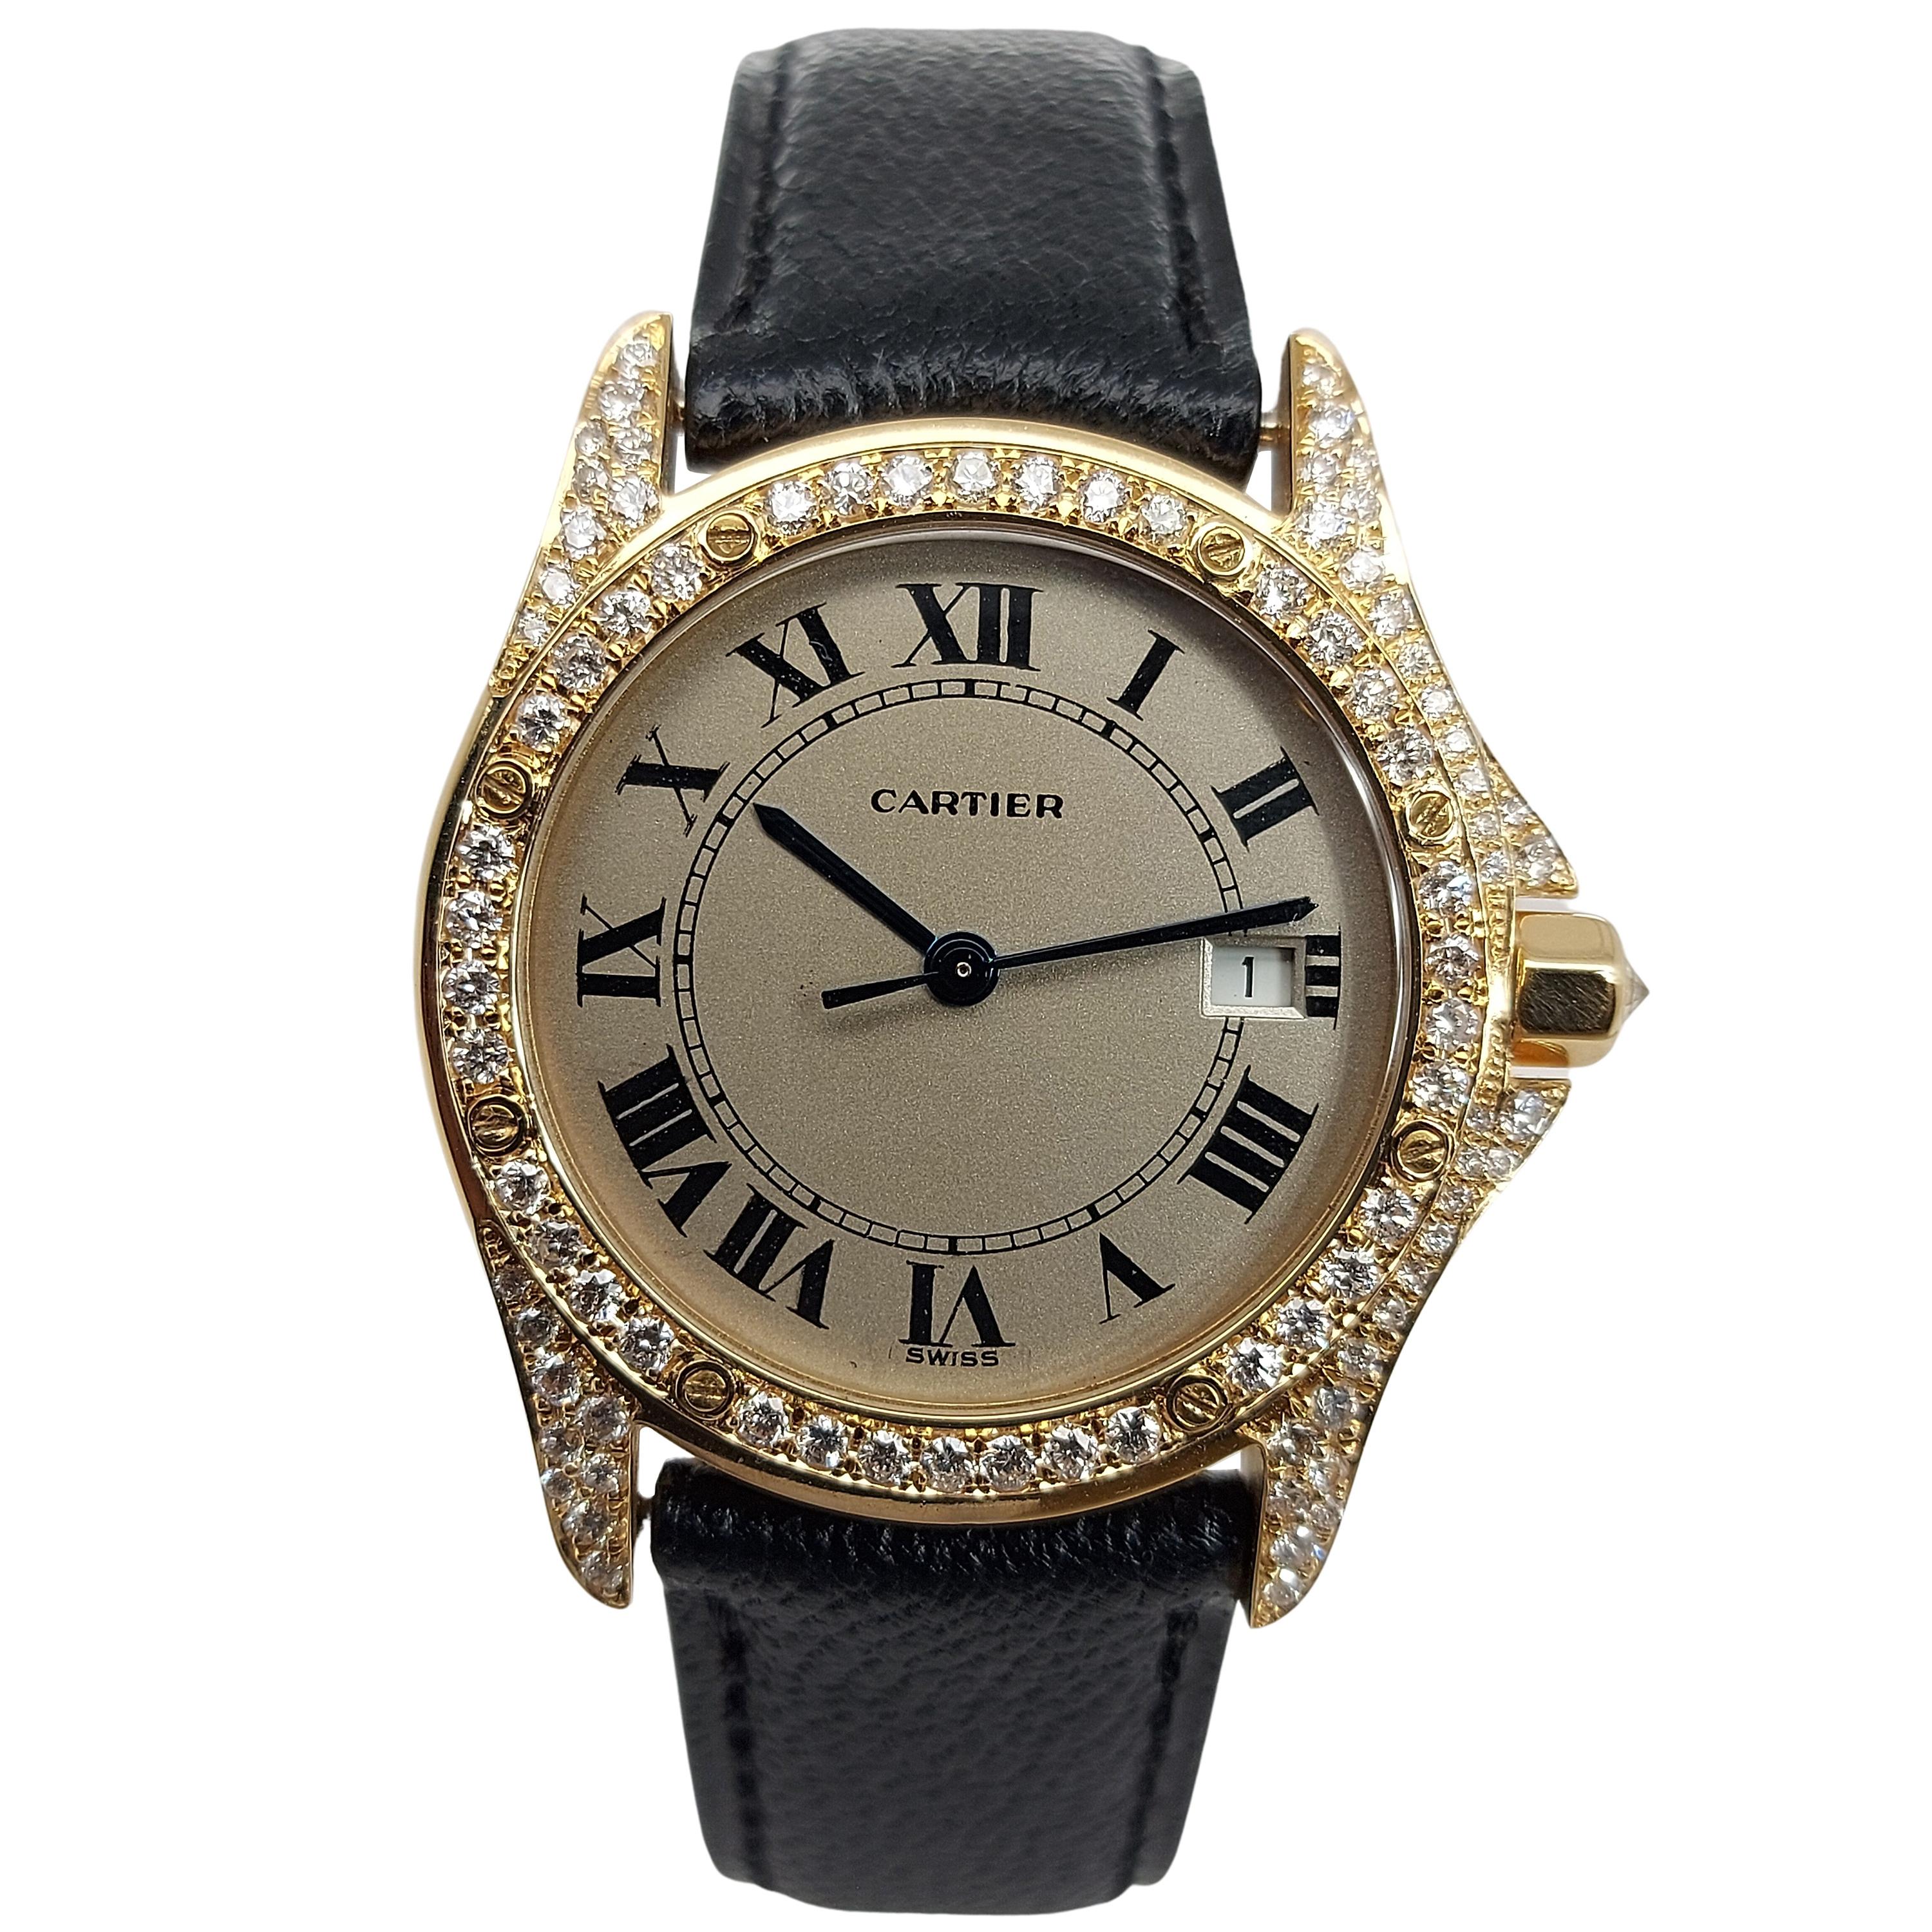 Cartier Cougar Wristwatch, 18 Karat Yellow Gold, Diamond Bezel, Quartz